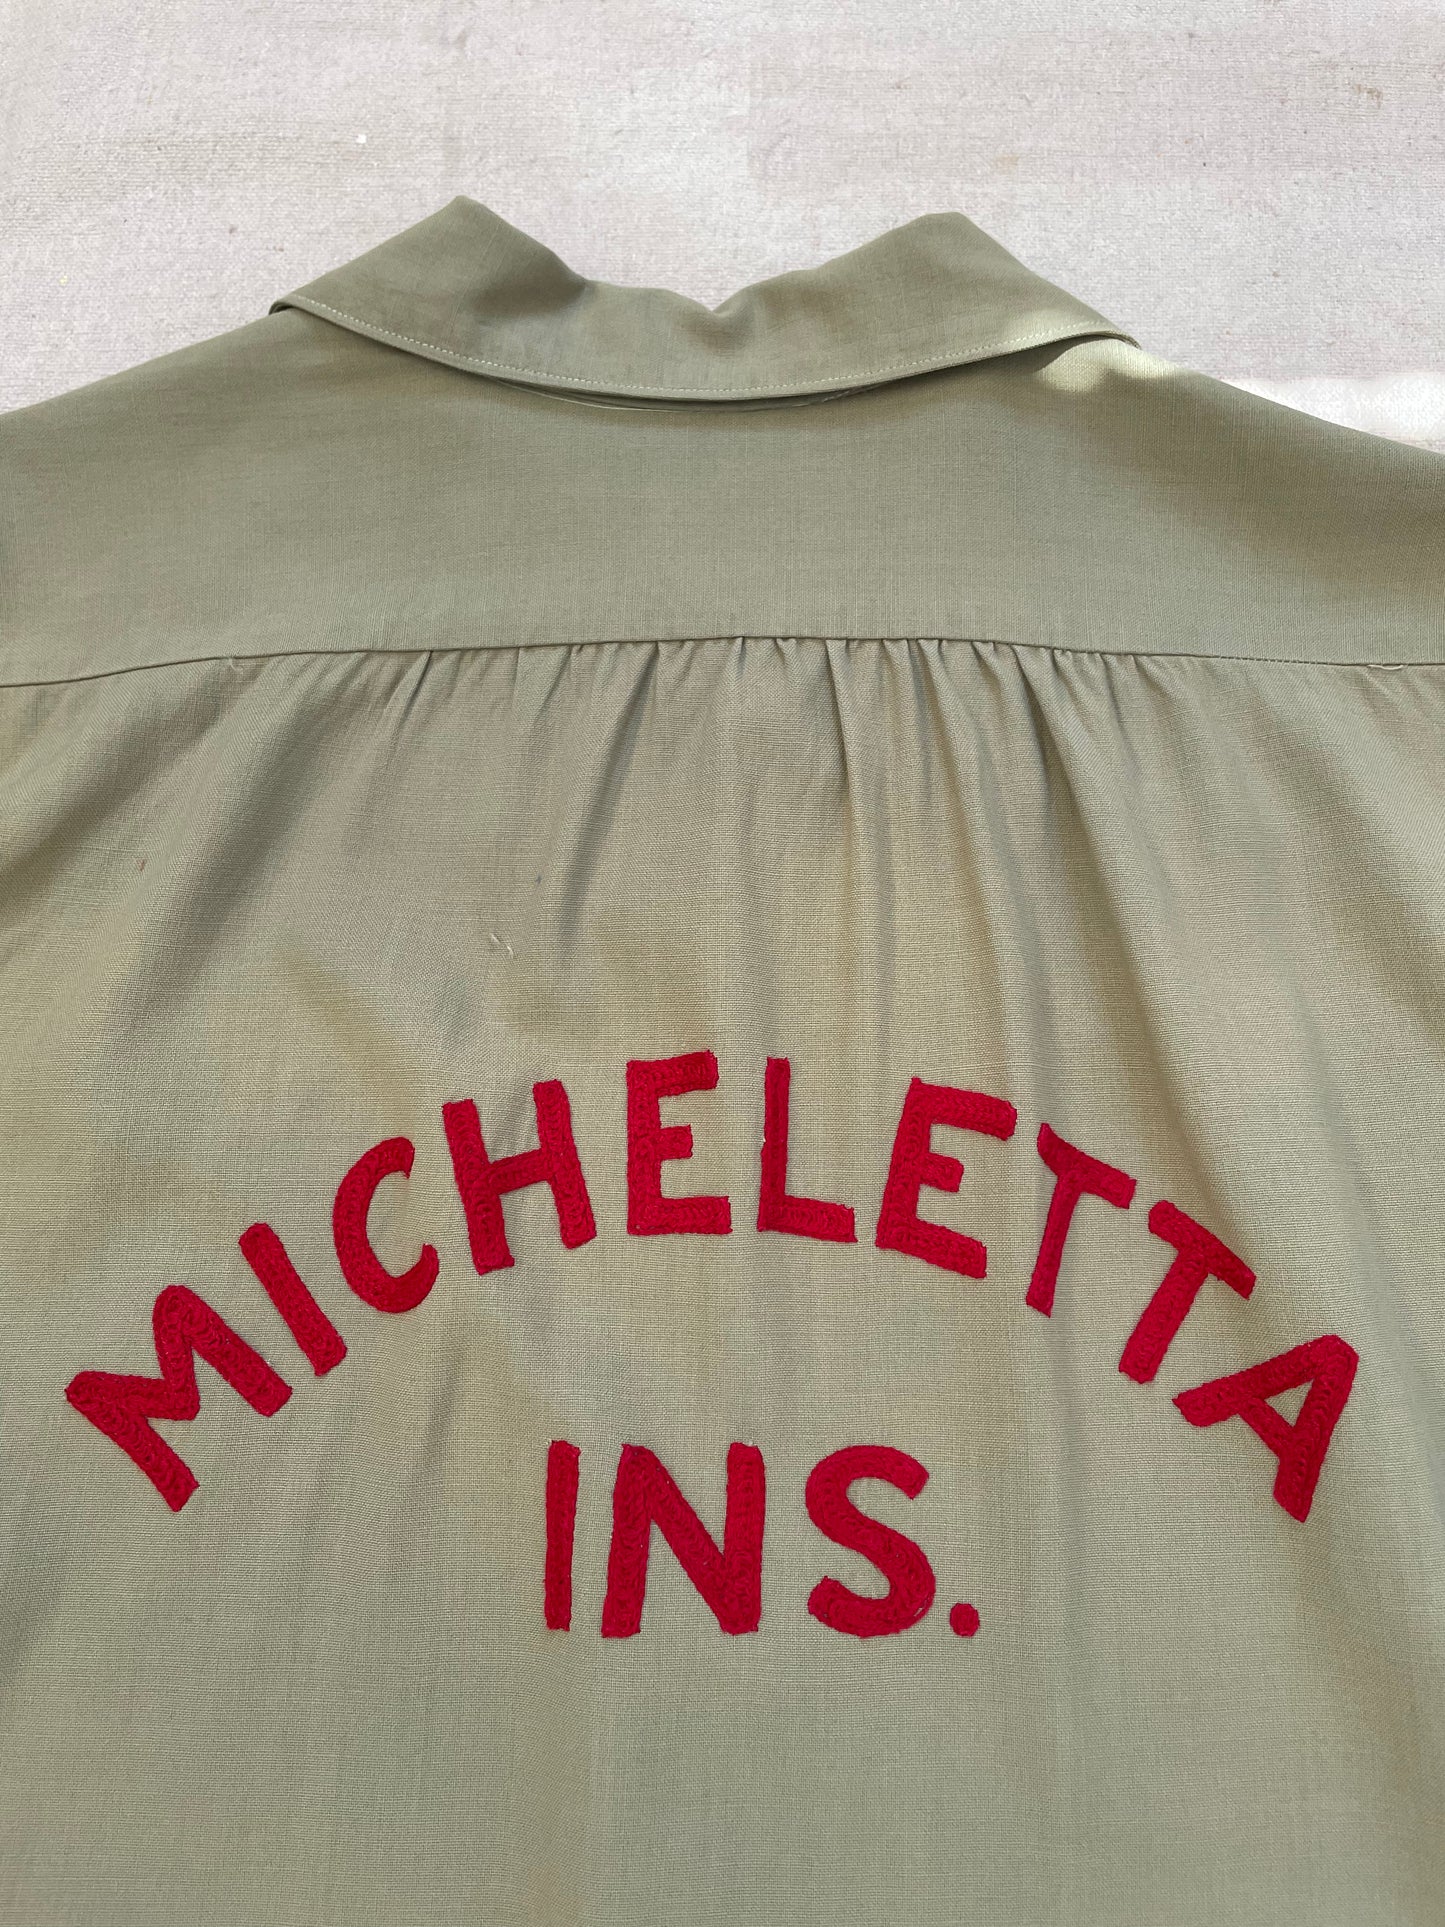 Micheletta Insurance Bowling Shirt